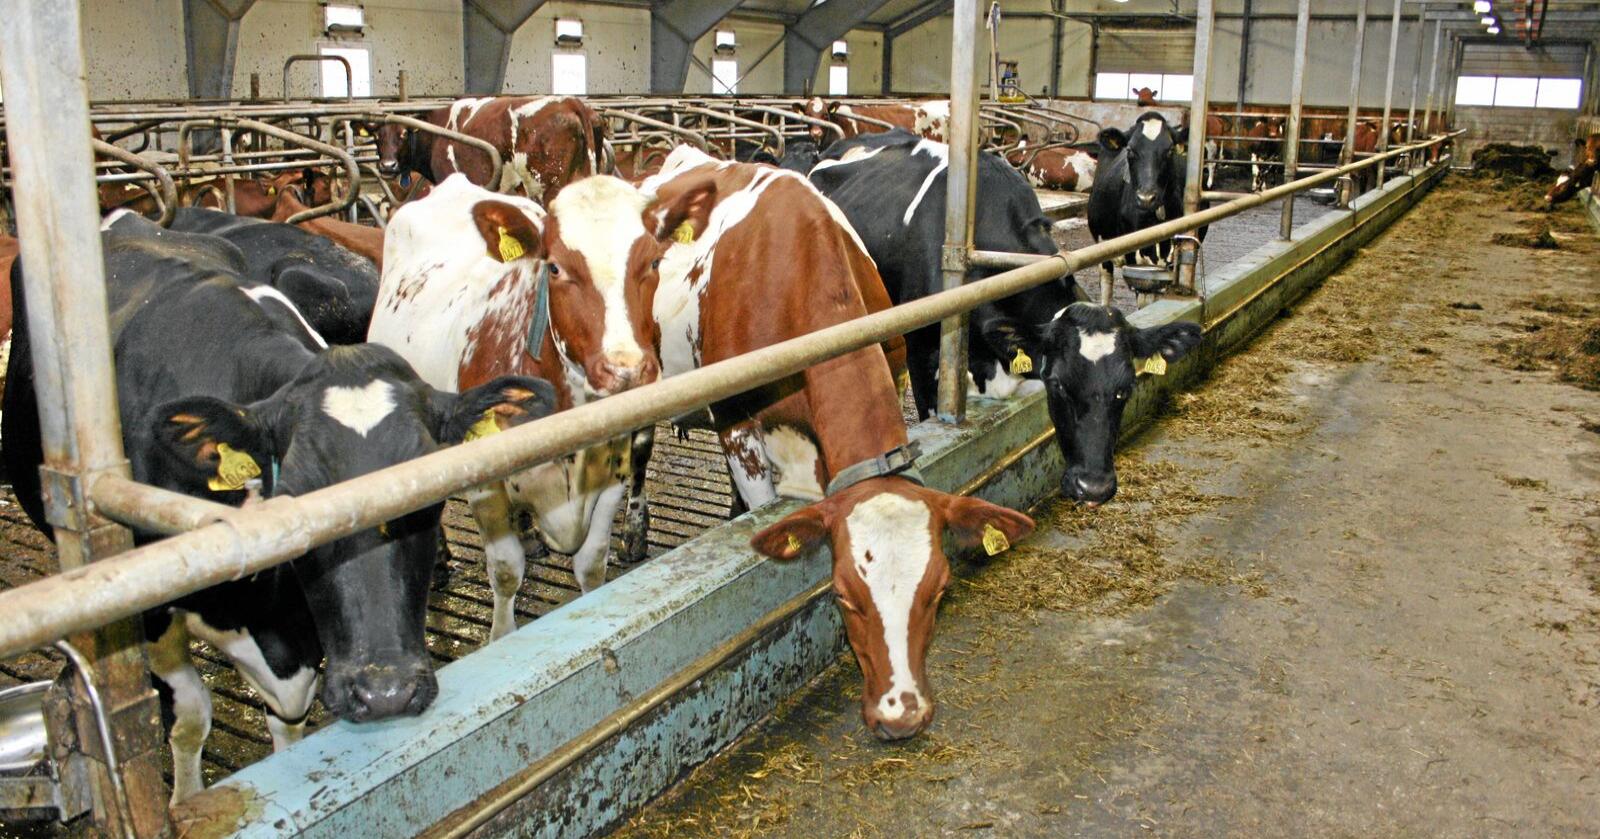 Mjølkeproduksjon: Leveransane av kumjølk ligg i år an til å nå sitt lågaste nivå nokosinne sidan mjølkekvotane blei innført tidleg på 80-talet. Det viser prognosar frå Tine. Foto: Bjarne Bekkeheien Aase